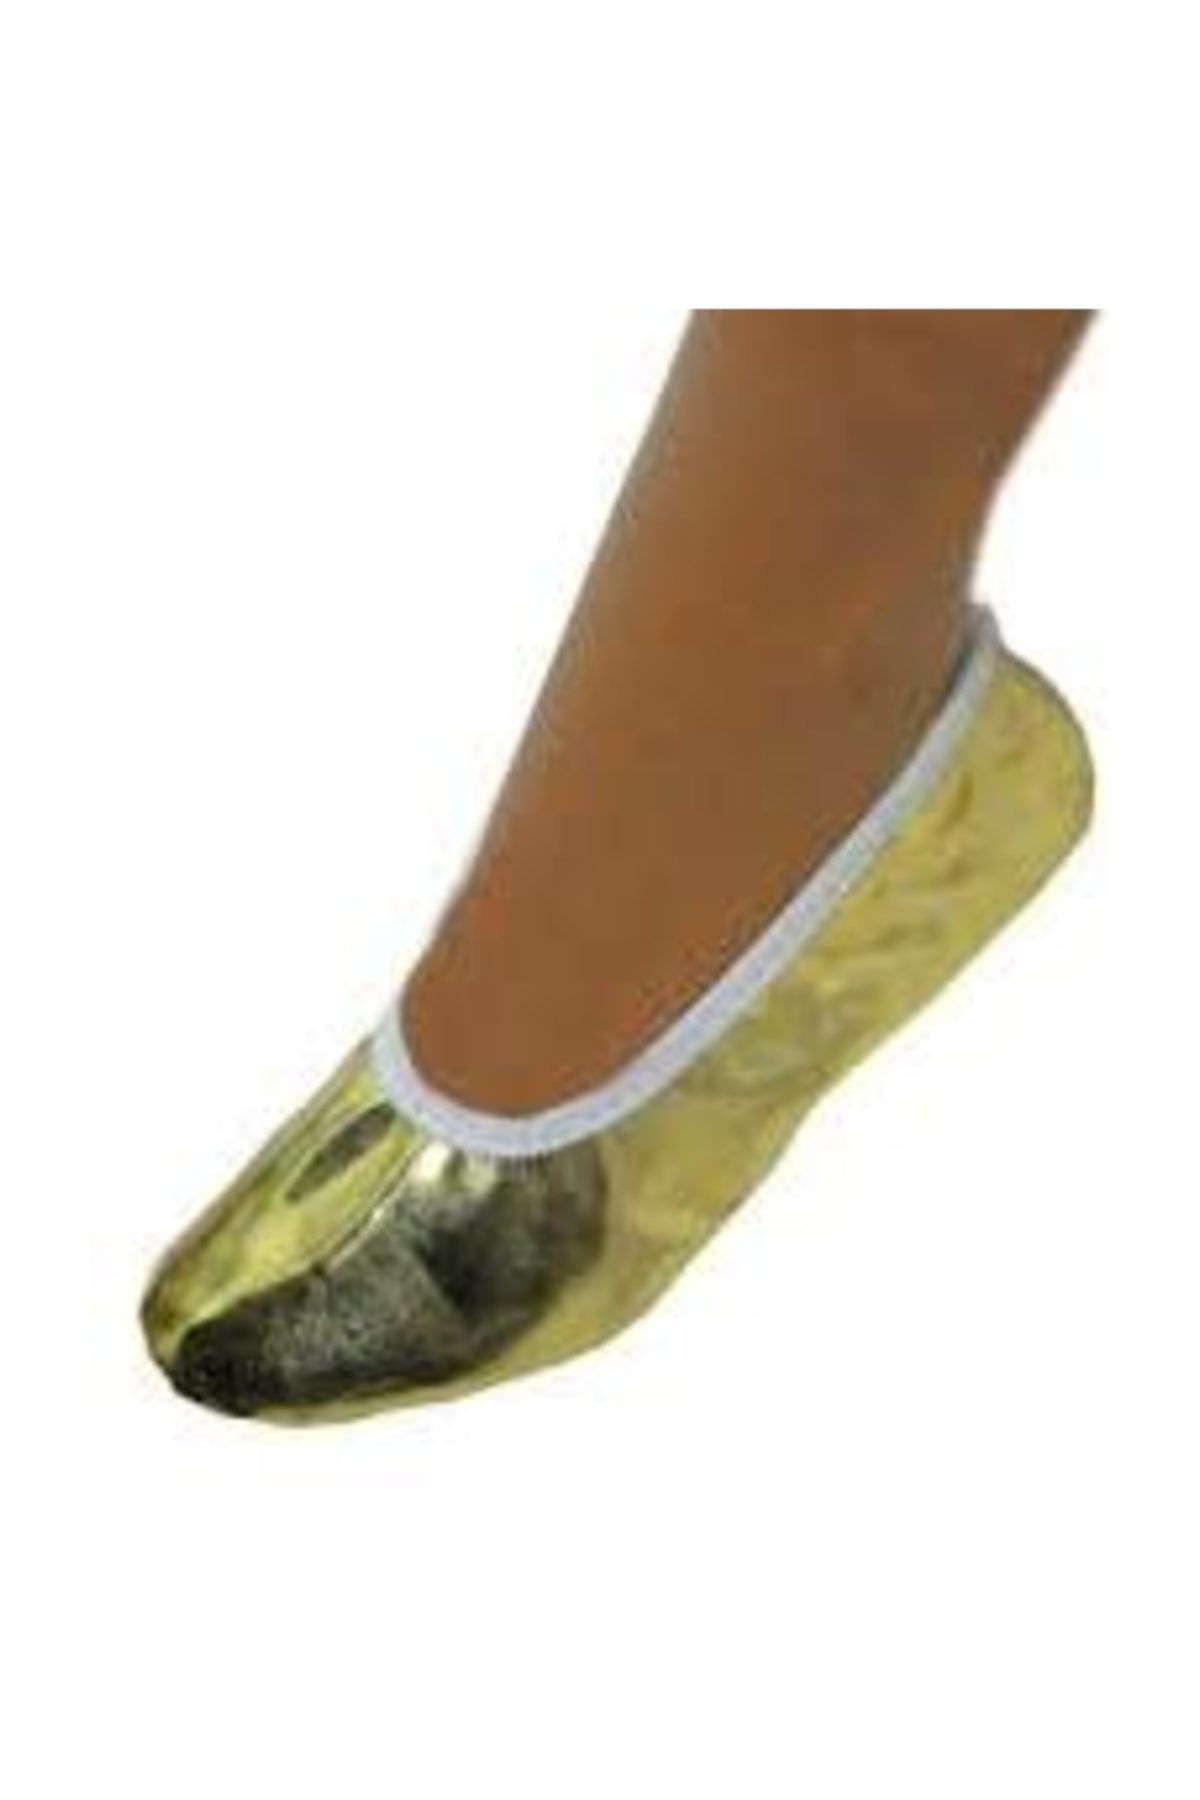 salarticaret Golt Altın Sarısı Lame Rengi Pisipisi Bale Ayakkabısı Siparişlerinizi Bir Beden Büyük Veriniz